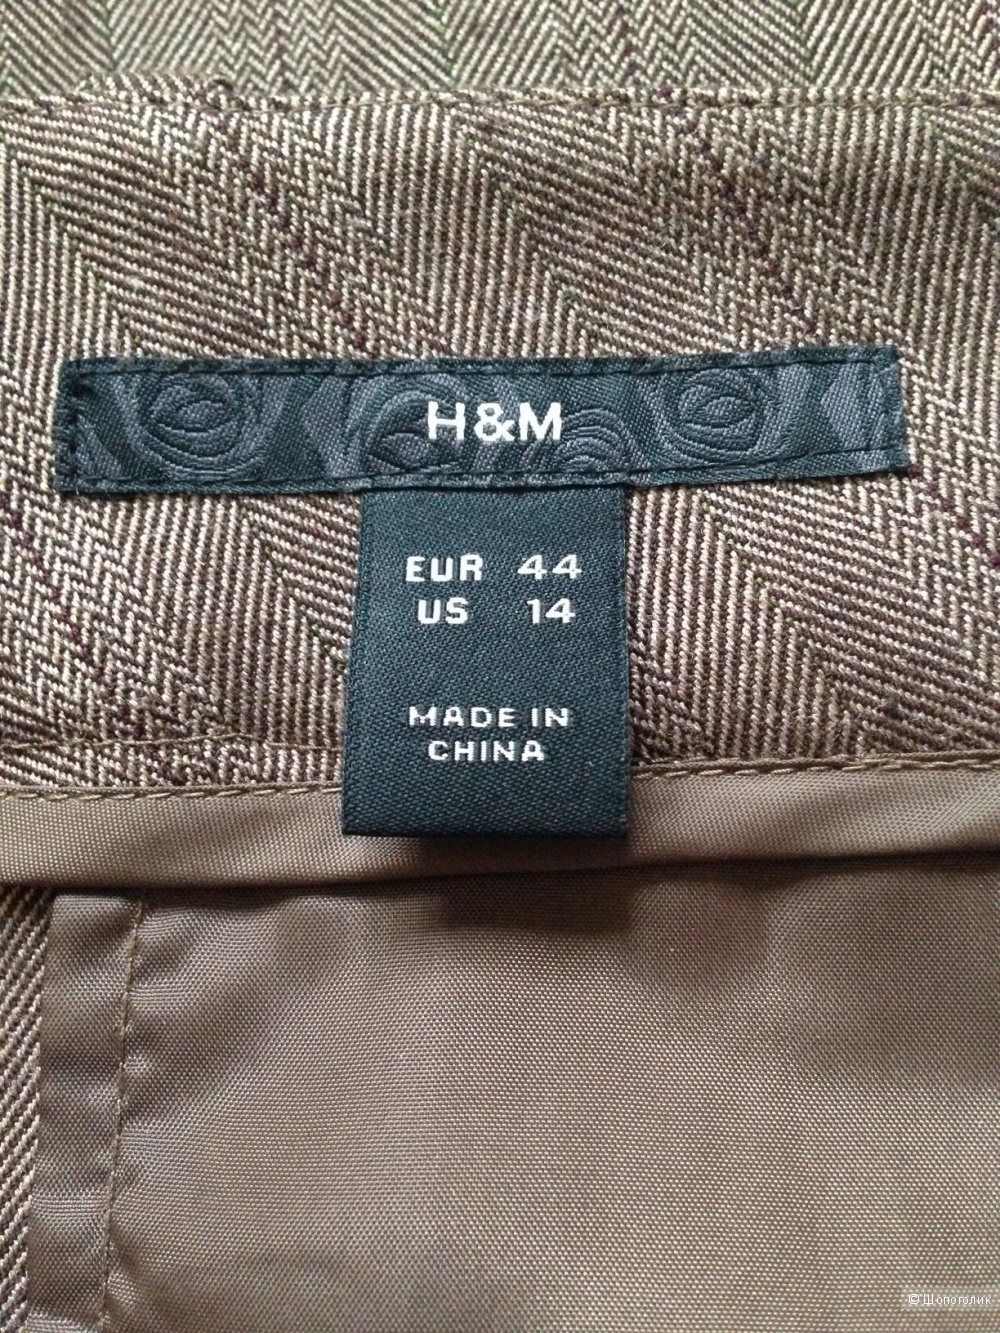 Брюки-кюлоты H&M серо-коричневые, р.50-52 (EUR44/US14)